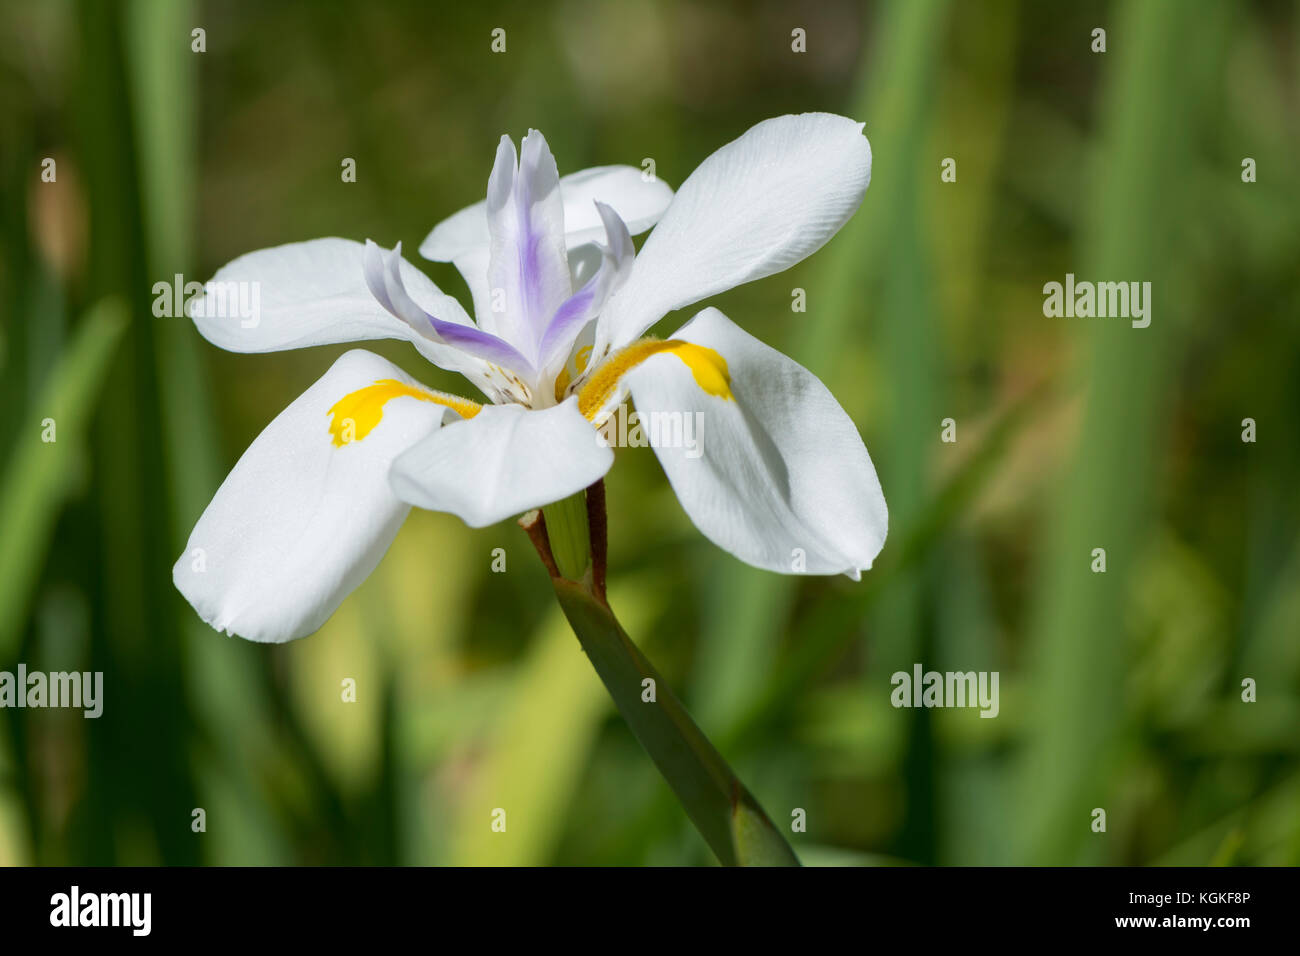 Dietes grandiflora fiore, noto anche come grande iris selvatici o fata iris che cresce in un ambiente da giardino. molto superficiale concentrarsi solo sul centro del flowe Foto Stock